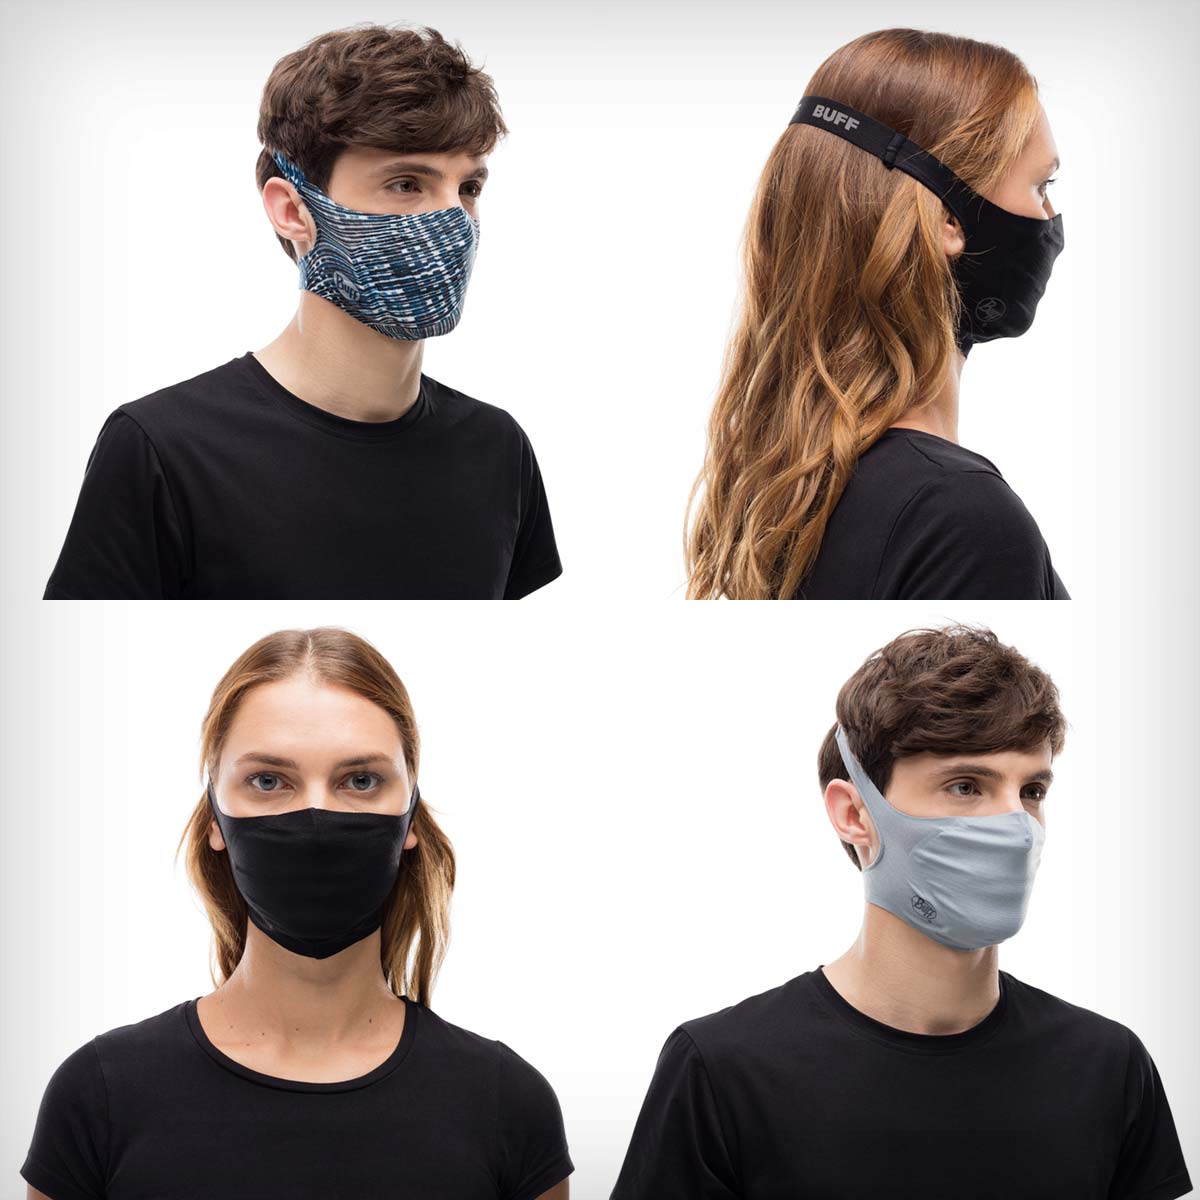 En TodoMountainBike: Buff presenta su mascarilla Filter Mask, con sistema de filtros reemplazables y un diseño innovador